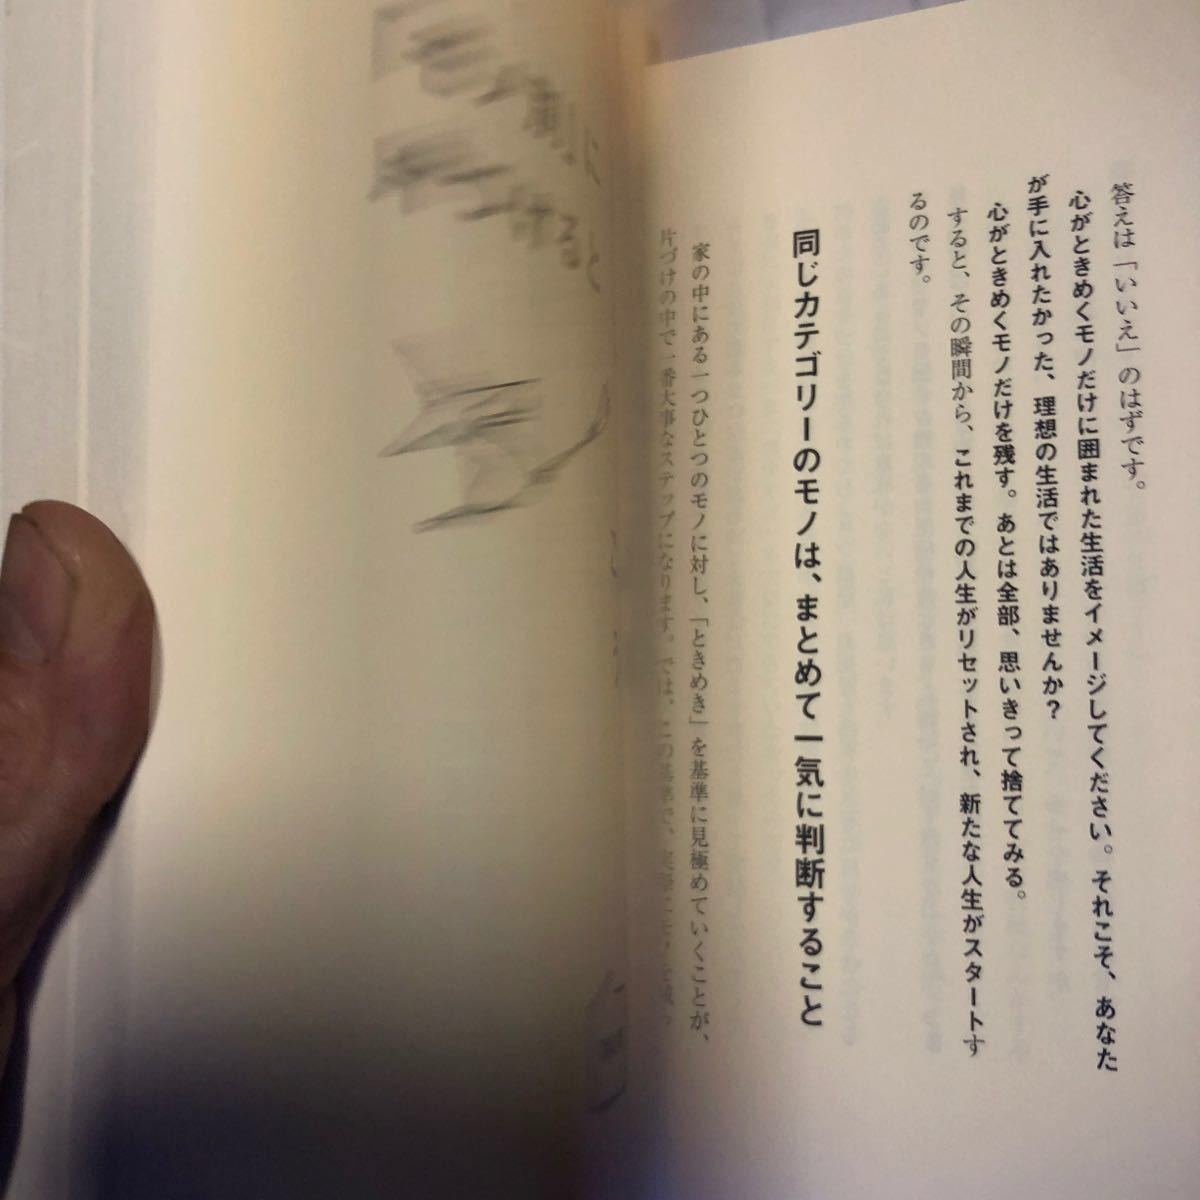 人生がときめく片づけの魔法 近藤麻理恵 サンマーク出版